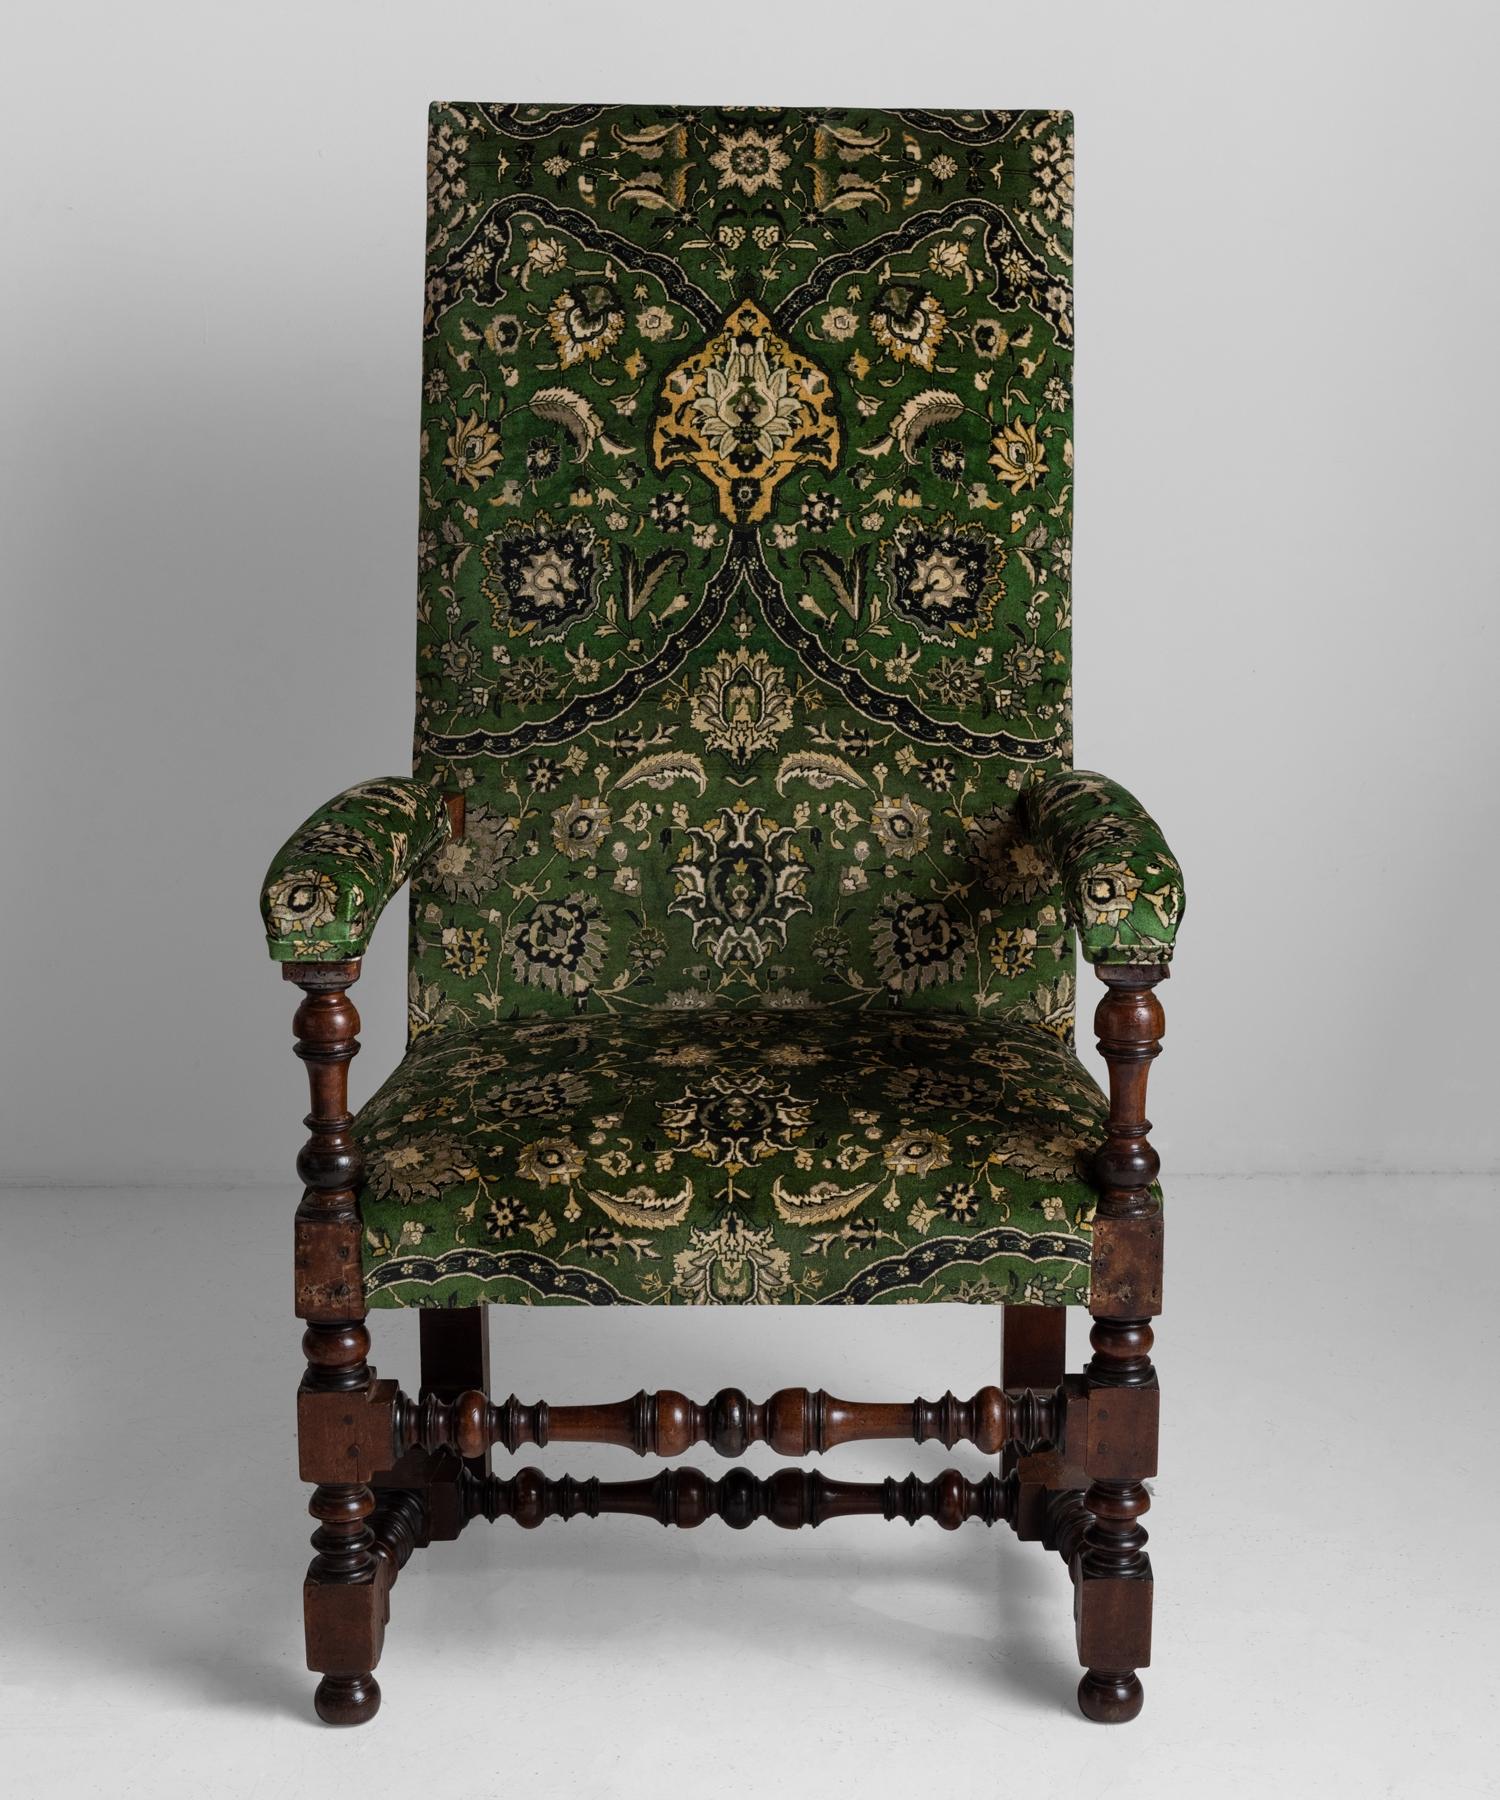 Newly upholstered in house of hackney velvet, on turned mahogany legs.
  